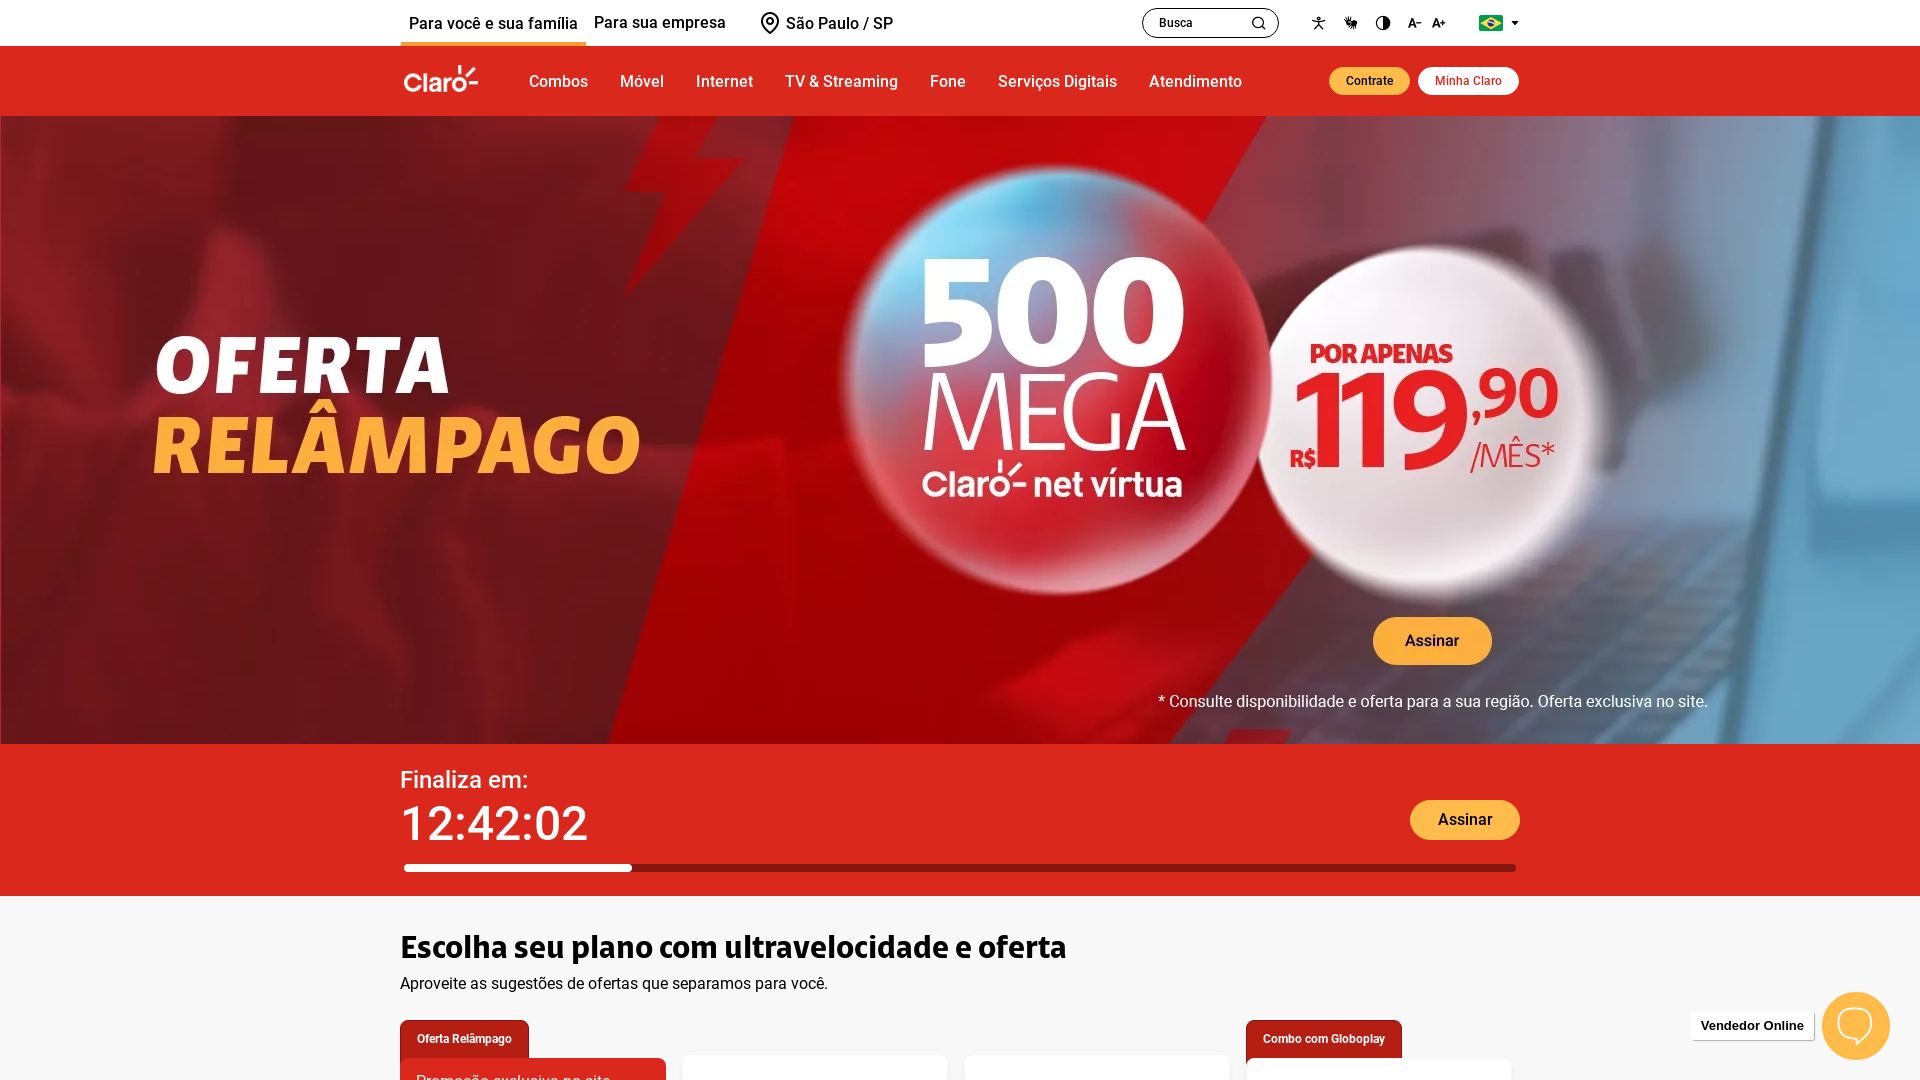 Website status www.claro.com.br is   ONLINE